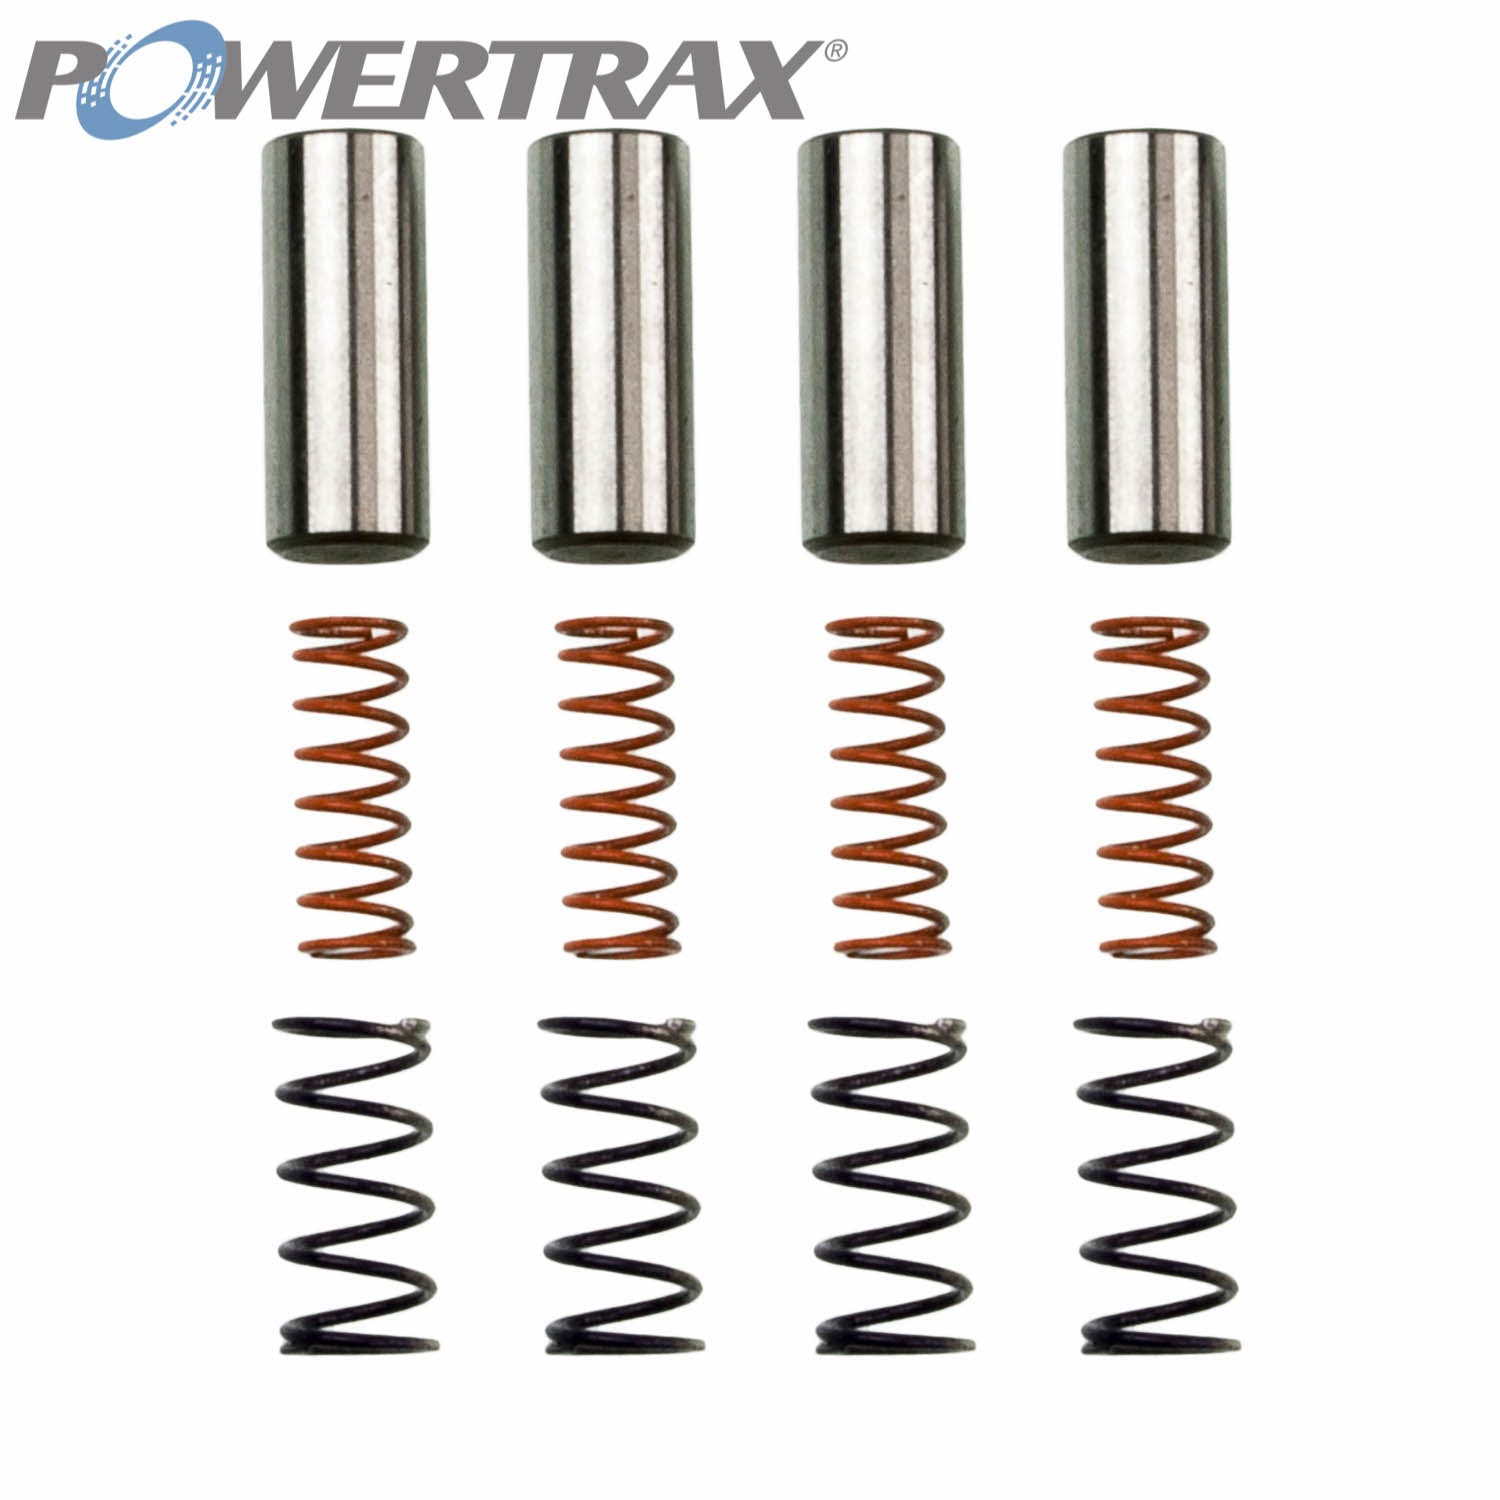 PowerTrax 1510350KAQ Spring And Pin Kit